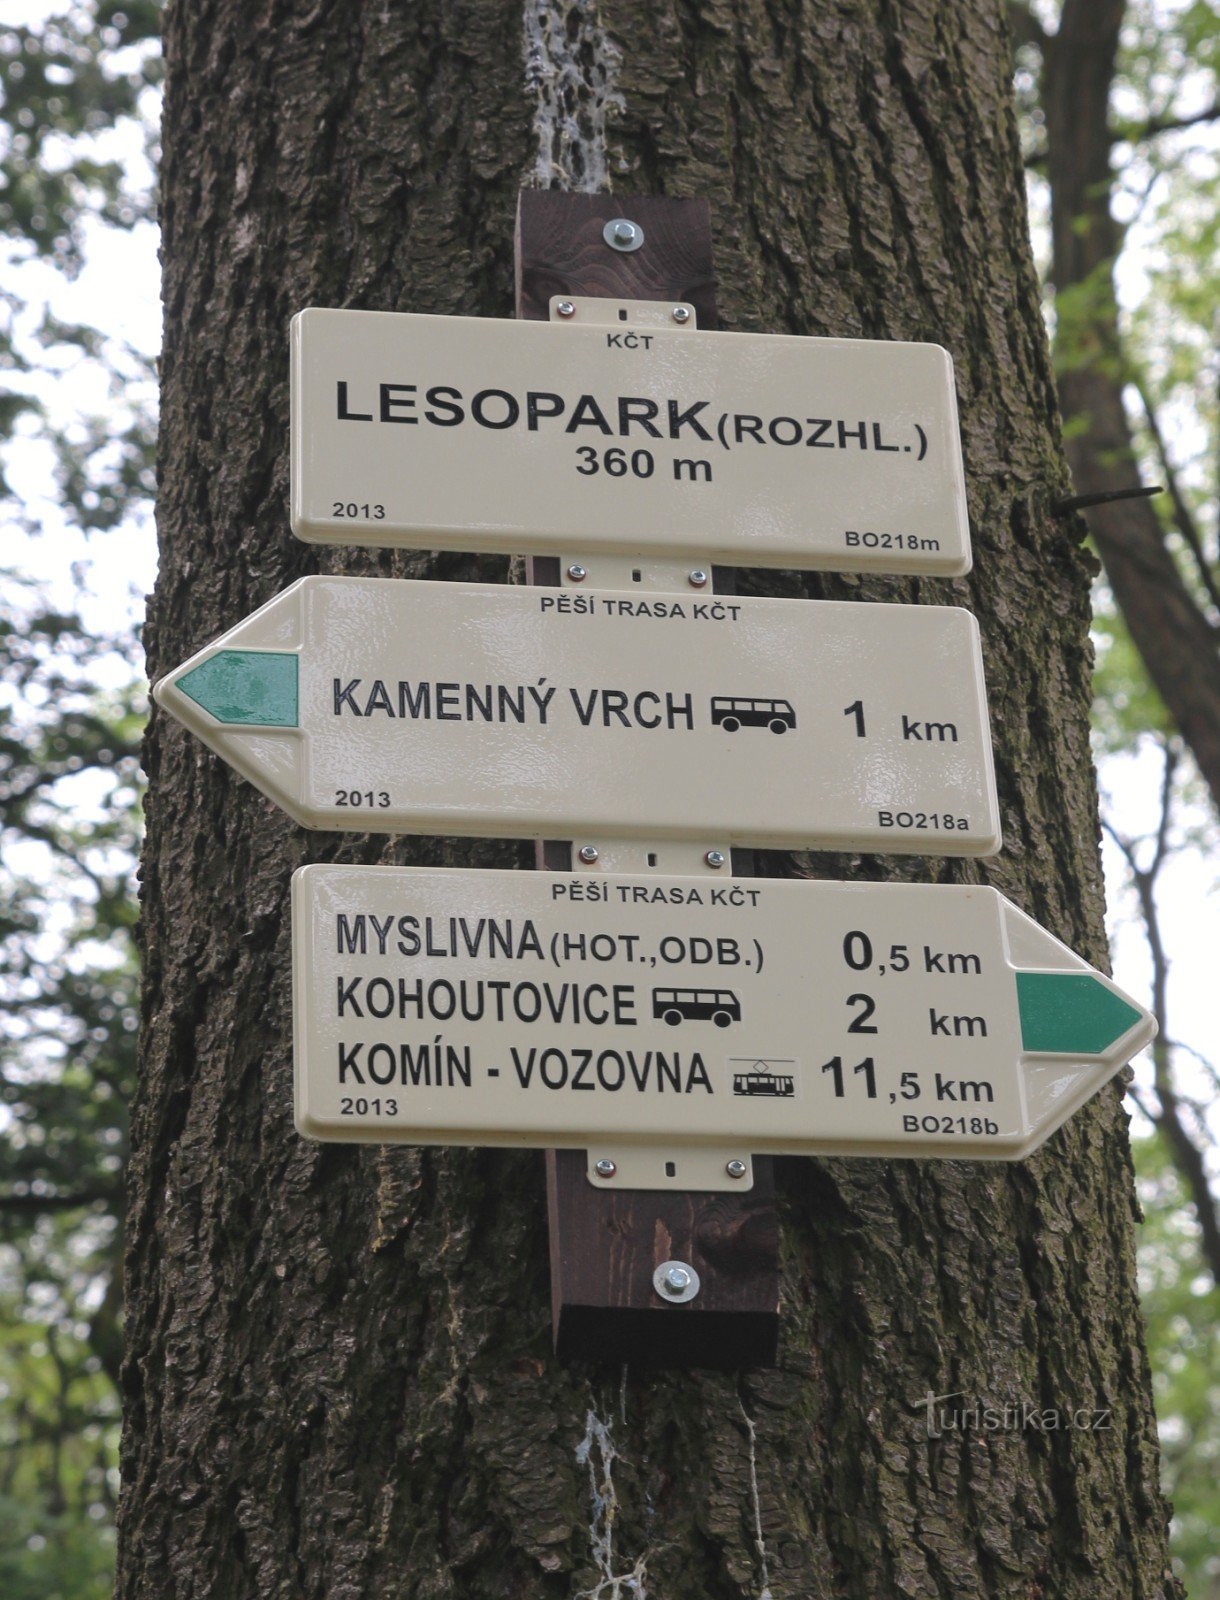 Rozdroże turystyczne Lesopark